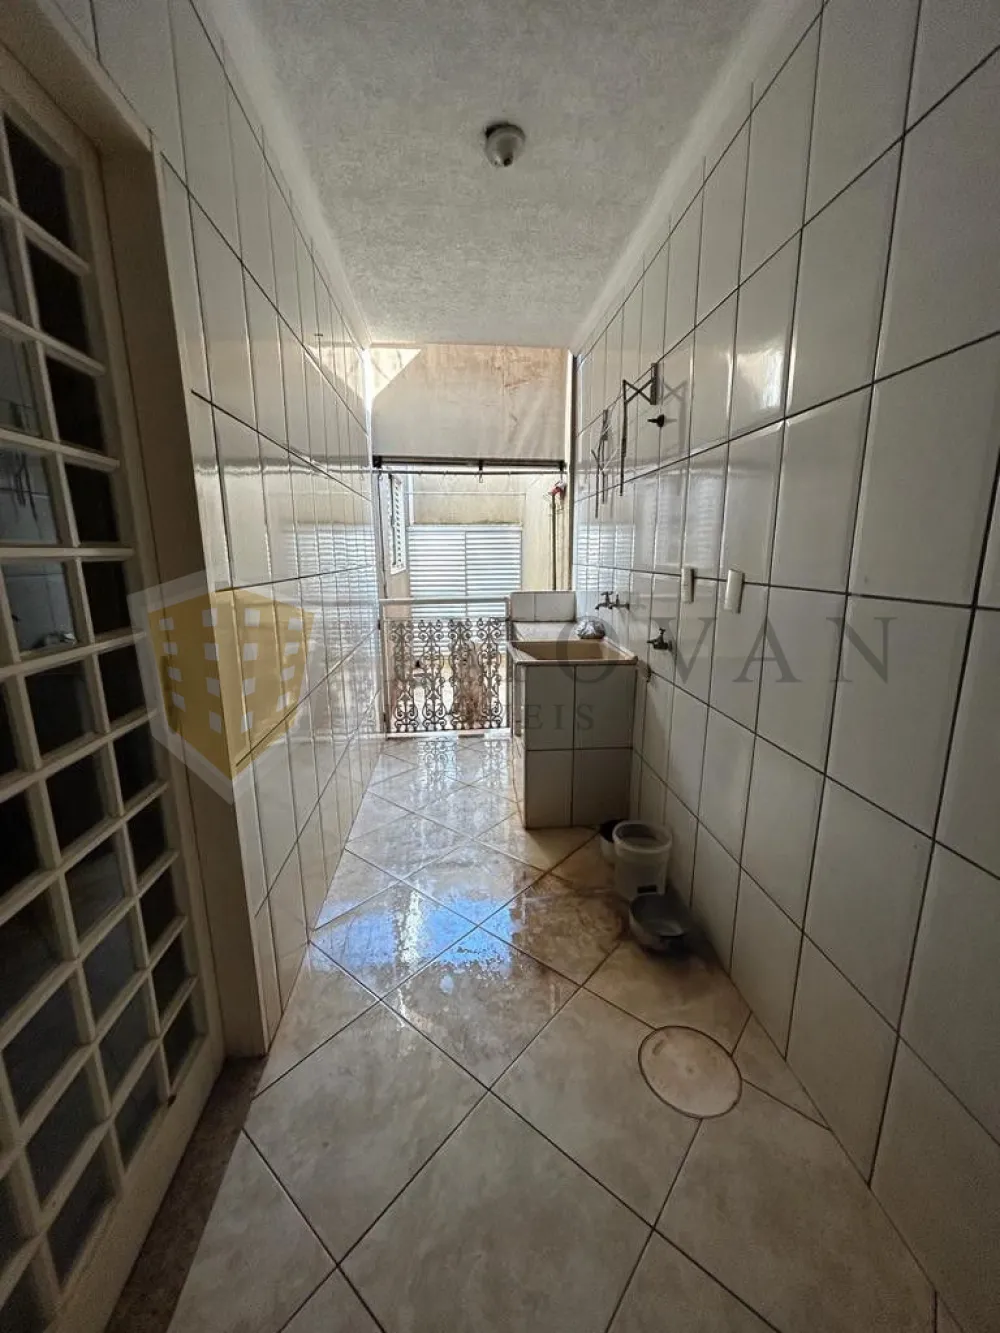 Comprar Casa / Padrão em Ribeirão Preto R$ 415.000,00 - Foto 12